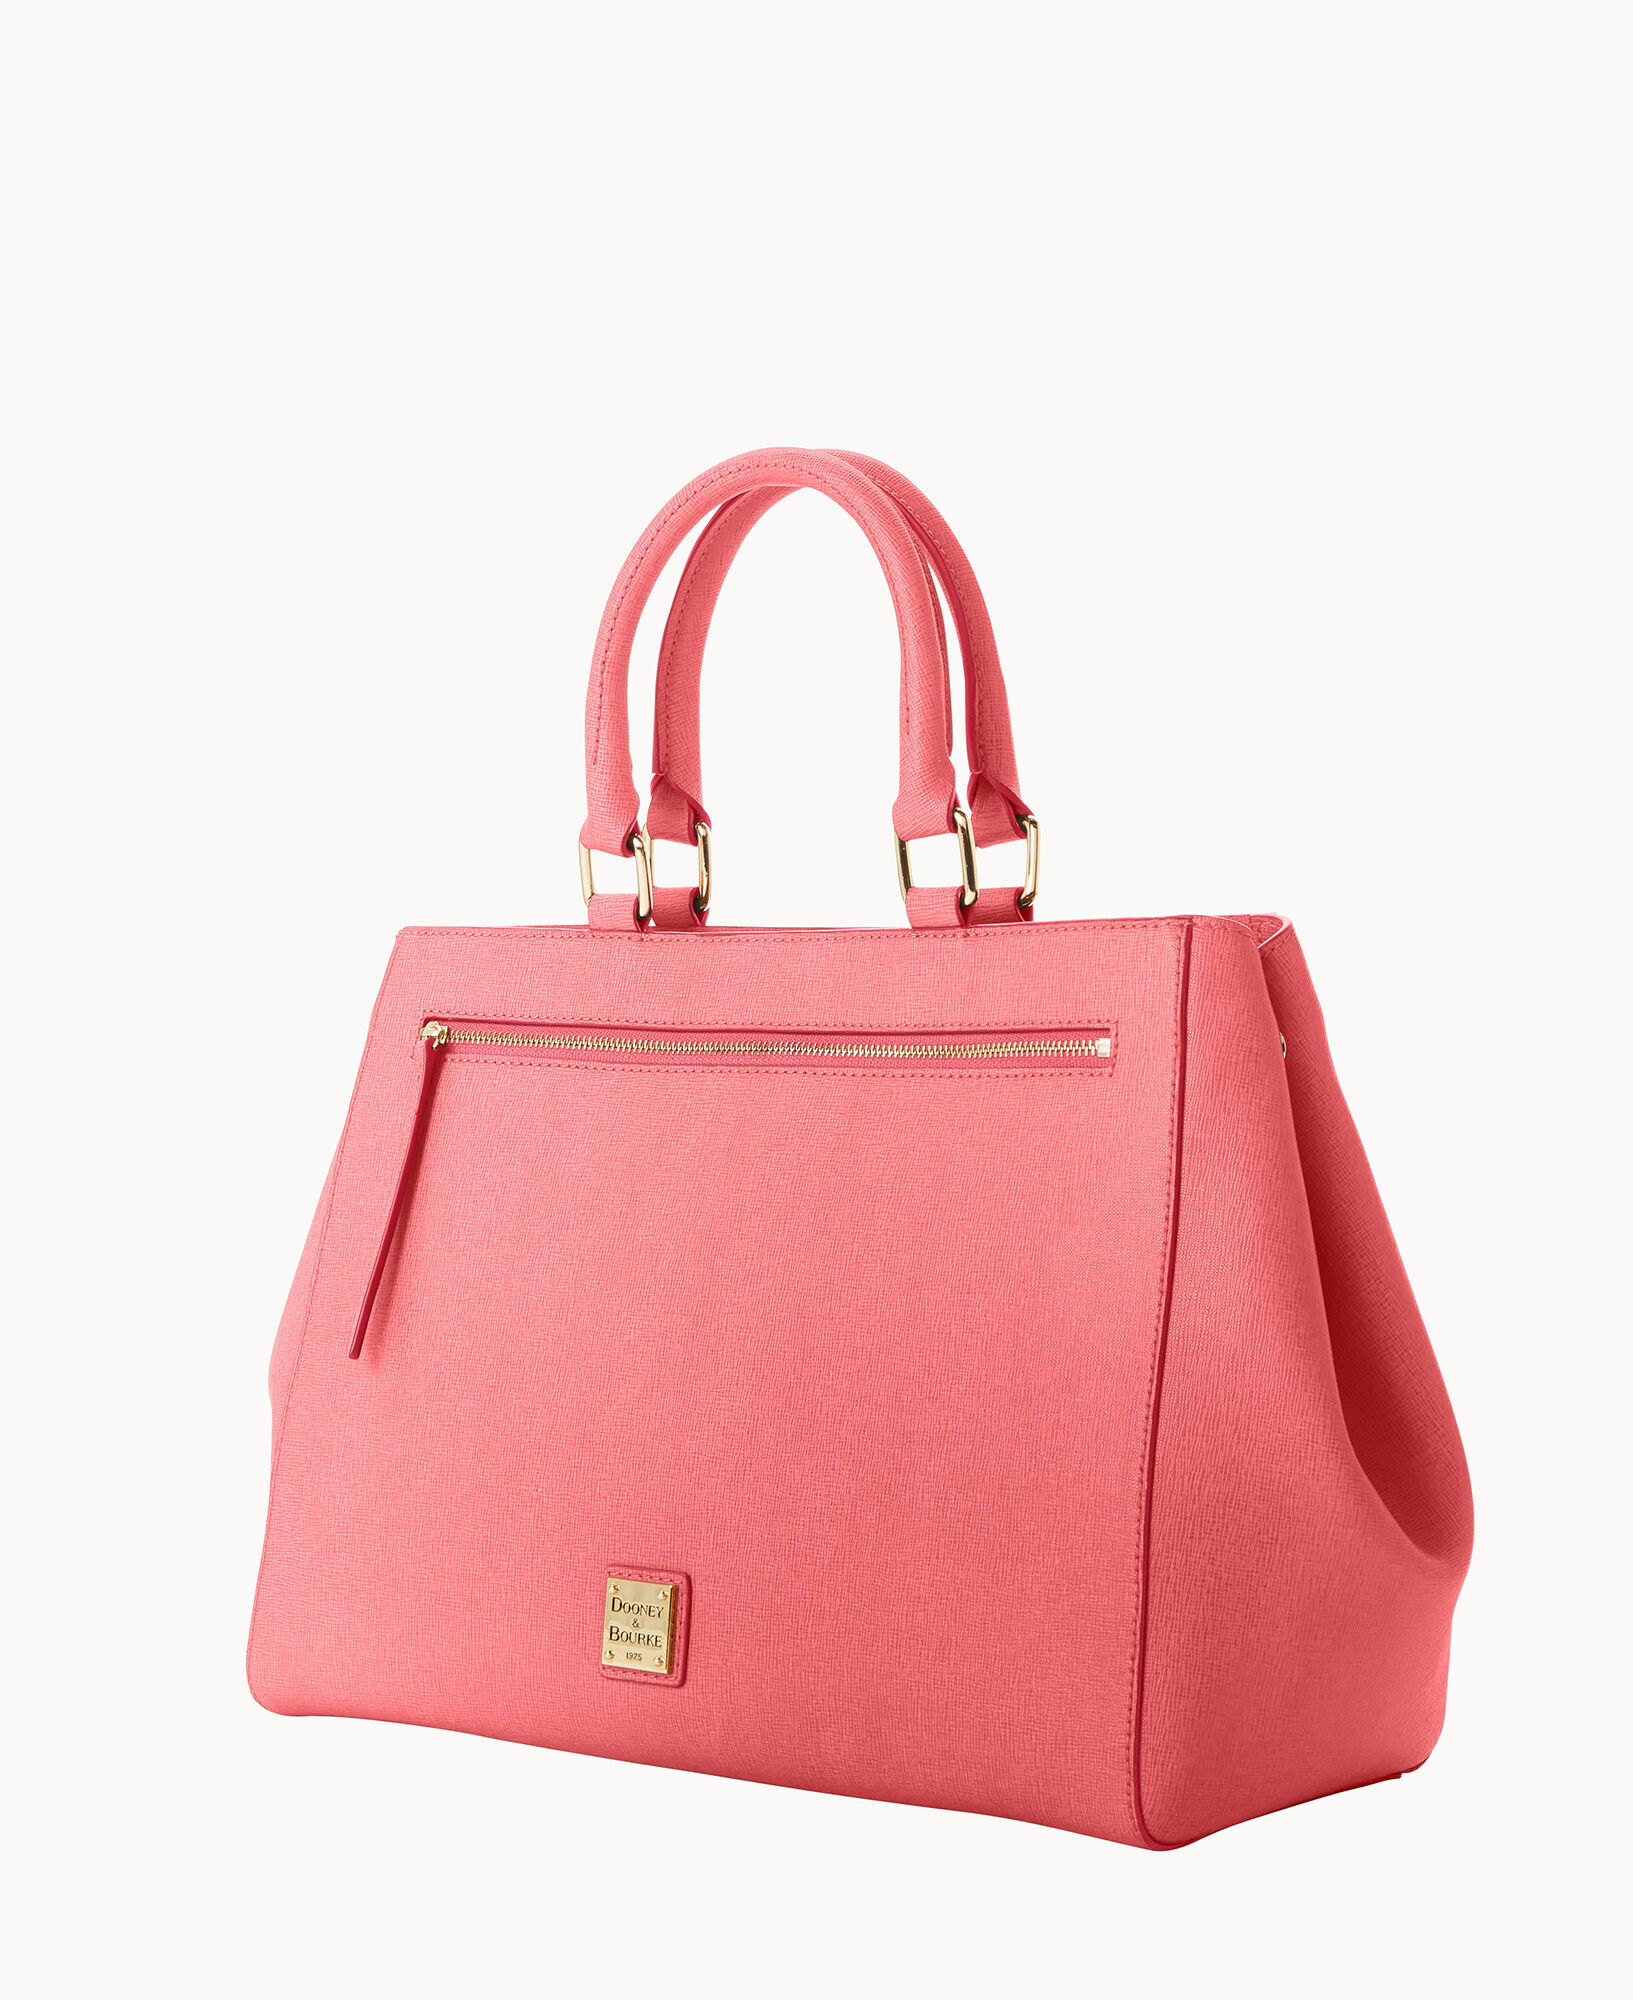 Dooney & Bourke Saffiano Domed Zip Satchel (Coral) Handbags - ShopStyle